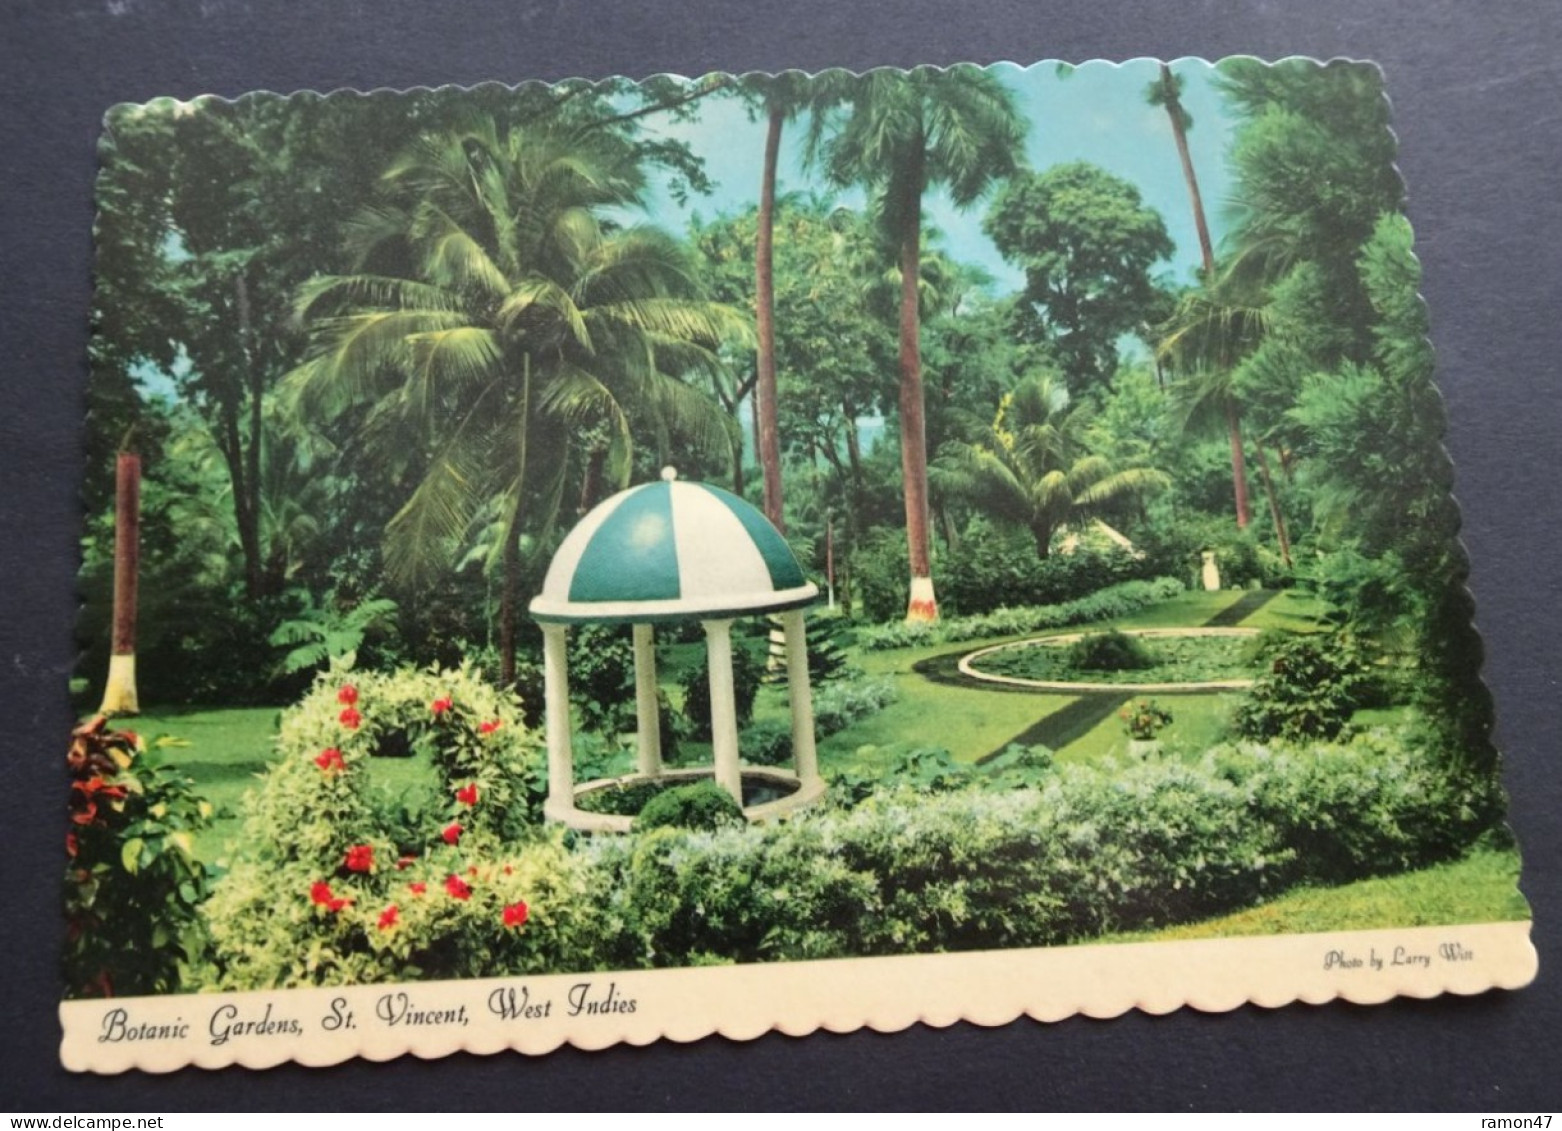 St. Vincent - Botanic Gardens - Photo Larry Witt - Dexter Press - Publisher Reliance Printery, St. Vincent, # DT-53655-C - Saint-Vincent-et-les Grenadines